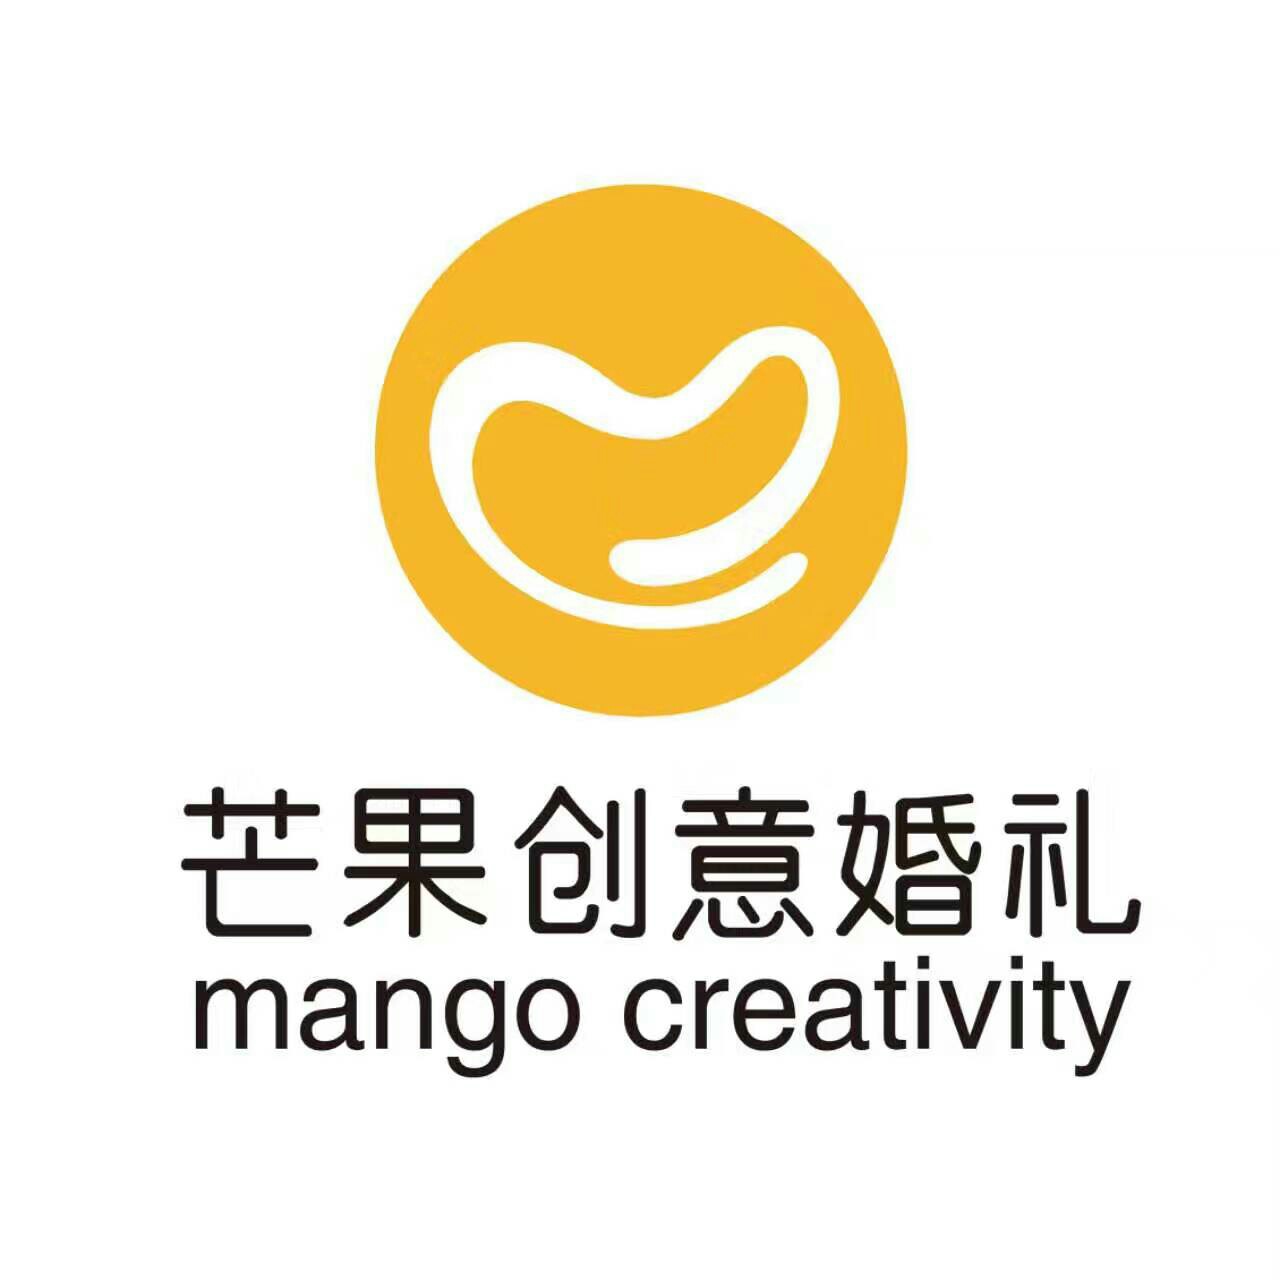 Mango芒果创意婚礼